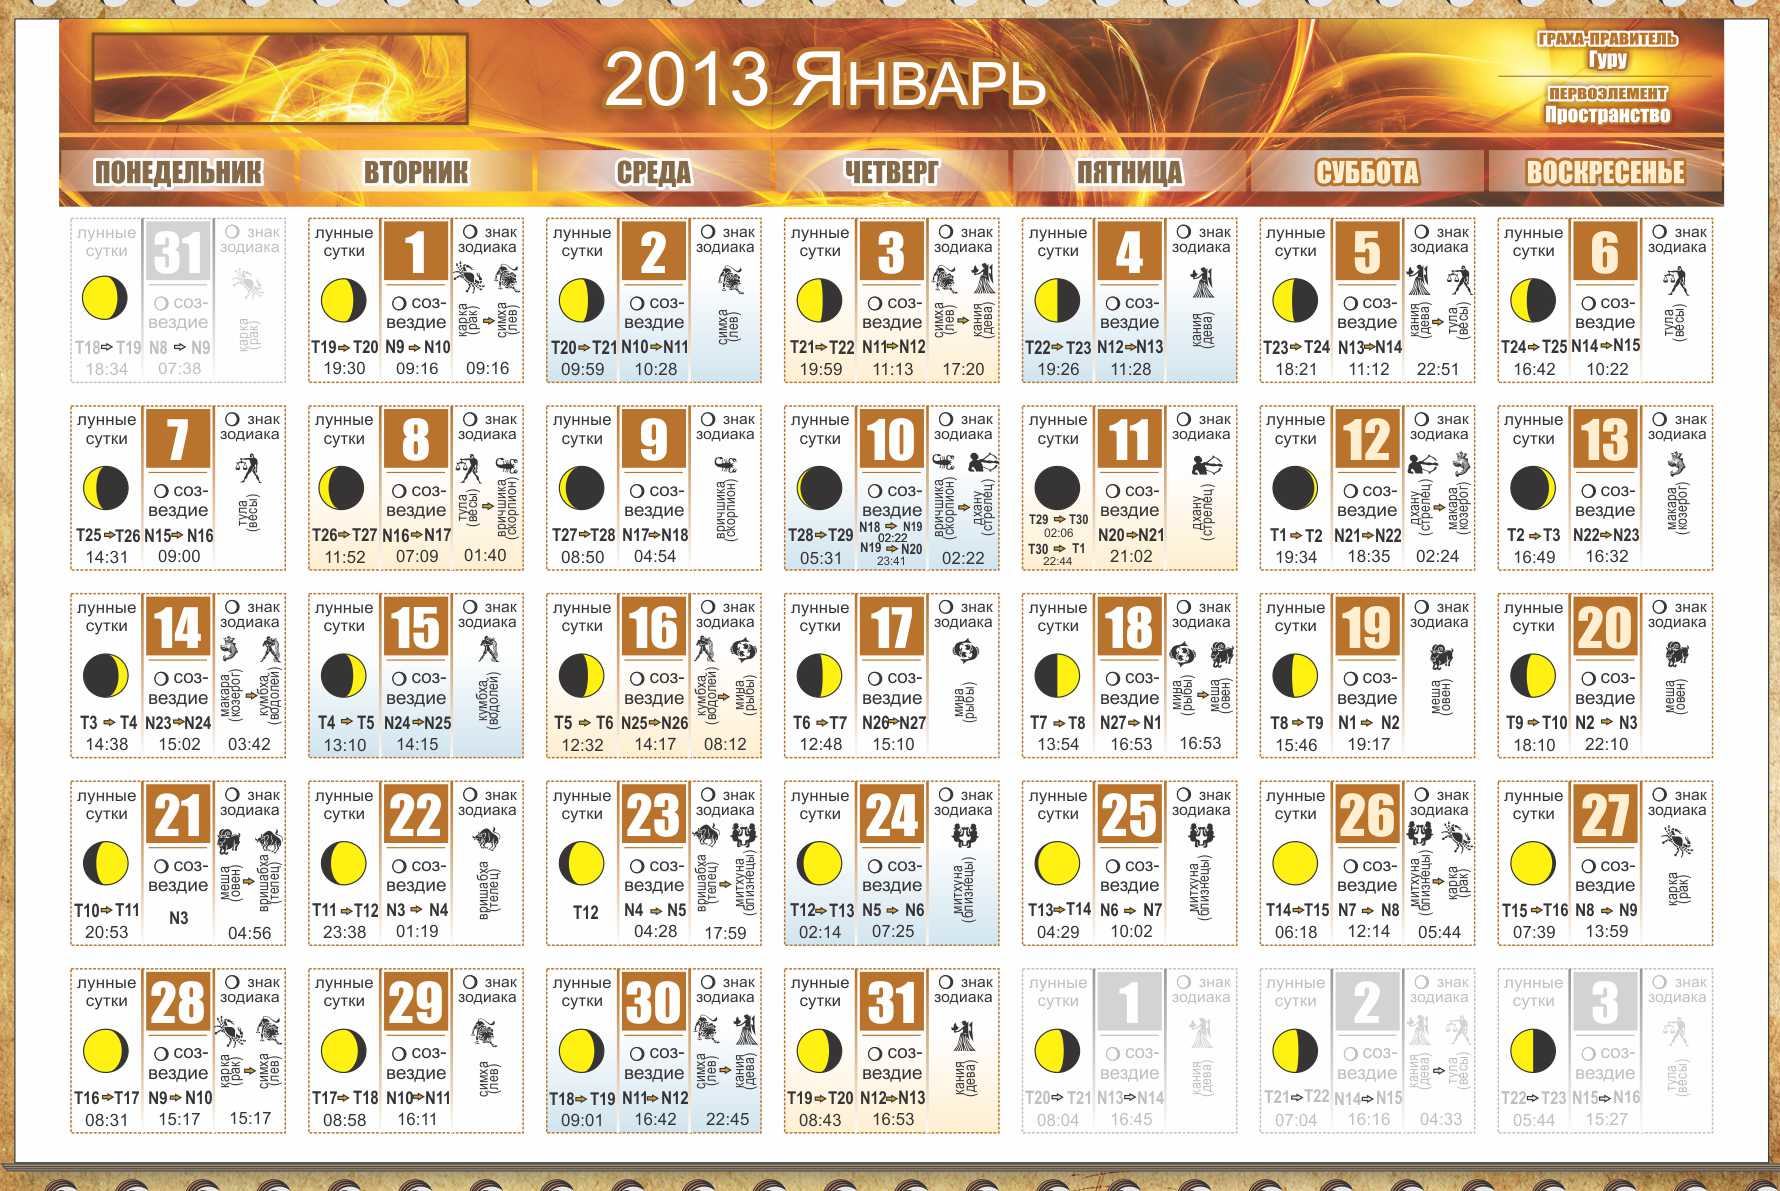 Ведический календарь на 2013-й год